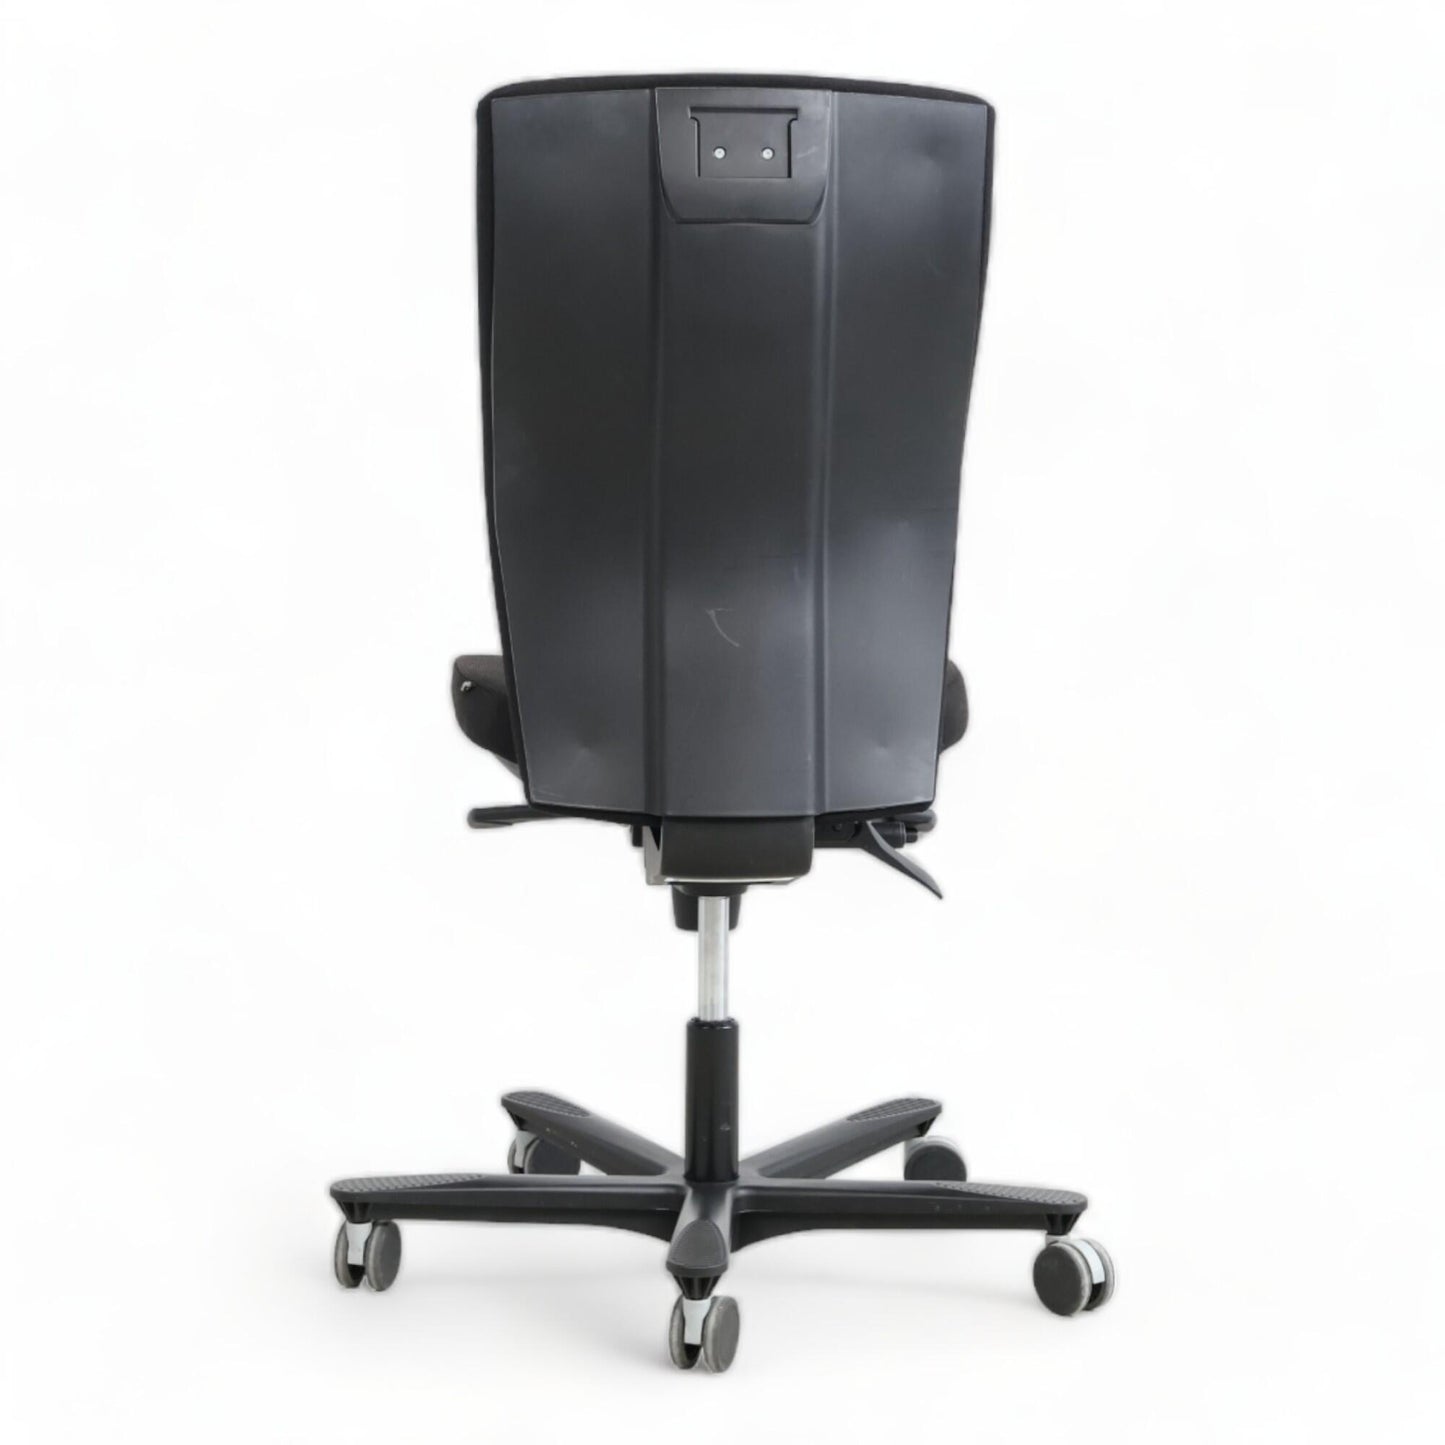 Nyrenset | EFG Splice kontorstol i sort, justerbar og ergonomisk